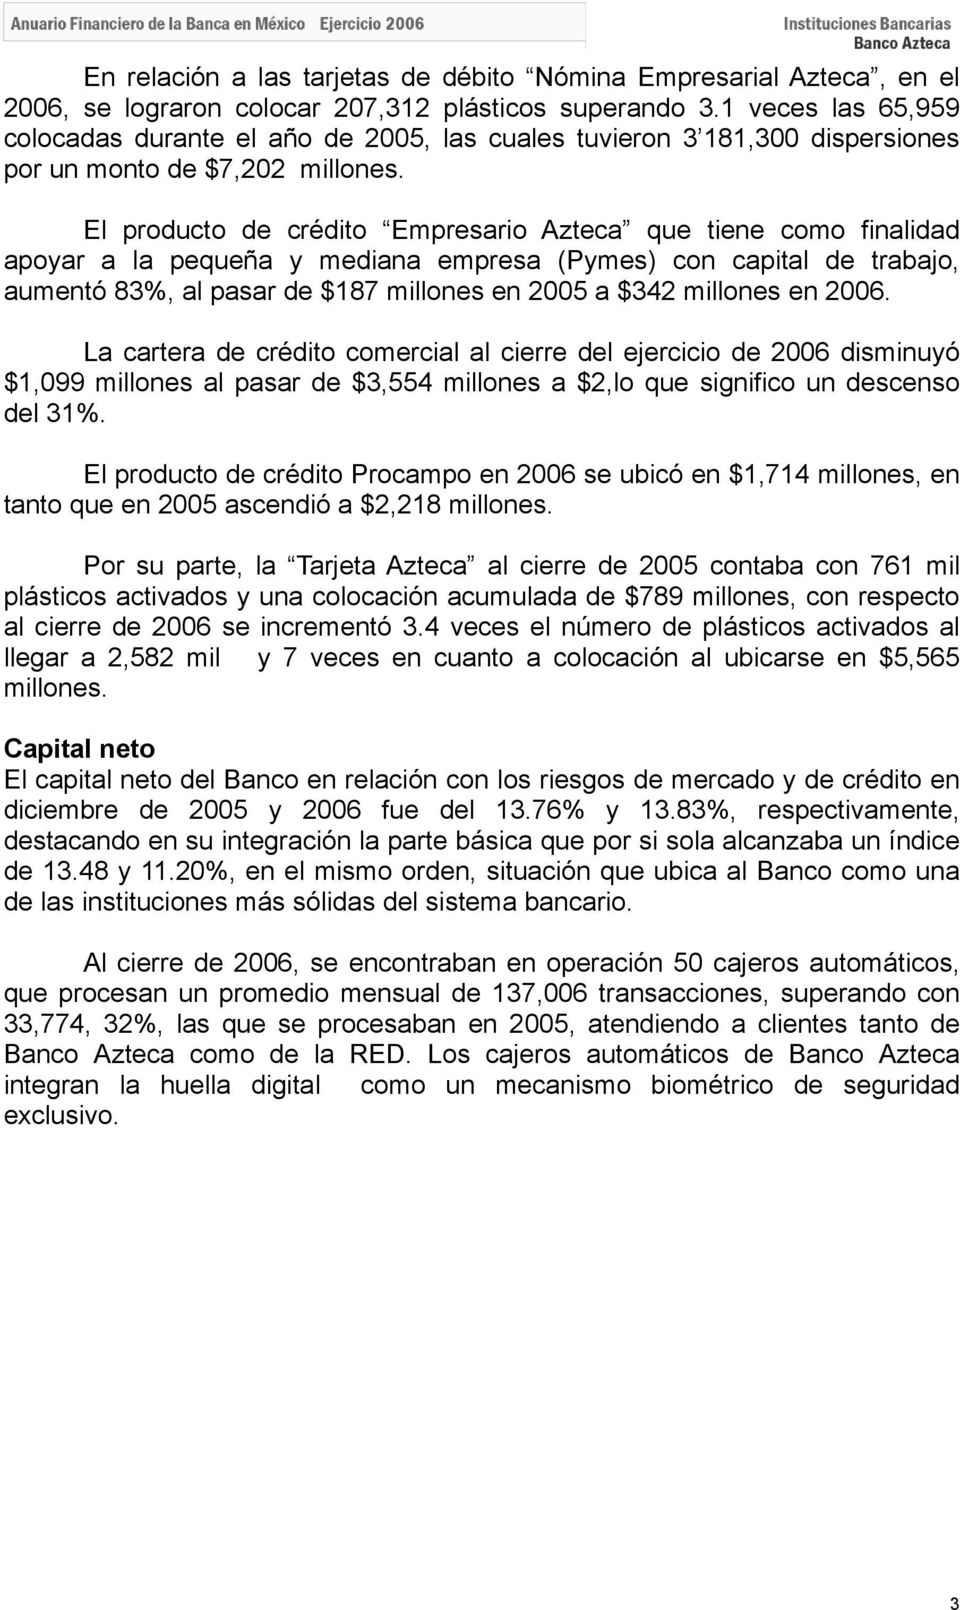 El producto de crédito Empresario Azteca que tiene como finalidad apoyar a la pequeña y mediana empresa (Pymes) con capital de trabajo, aumentó 83%, al pasar de $187 millones en 2005 a $342 millones